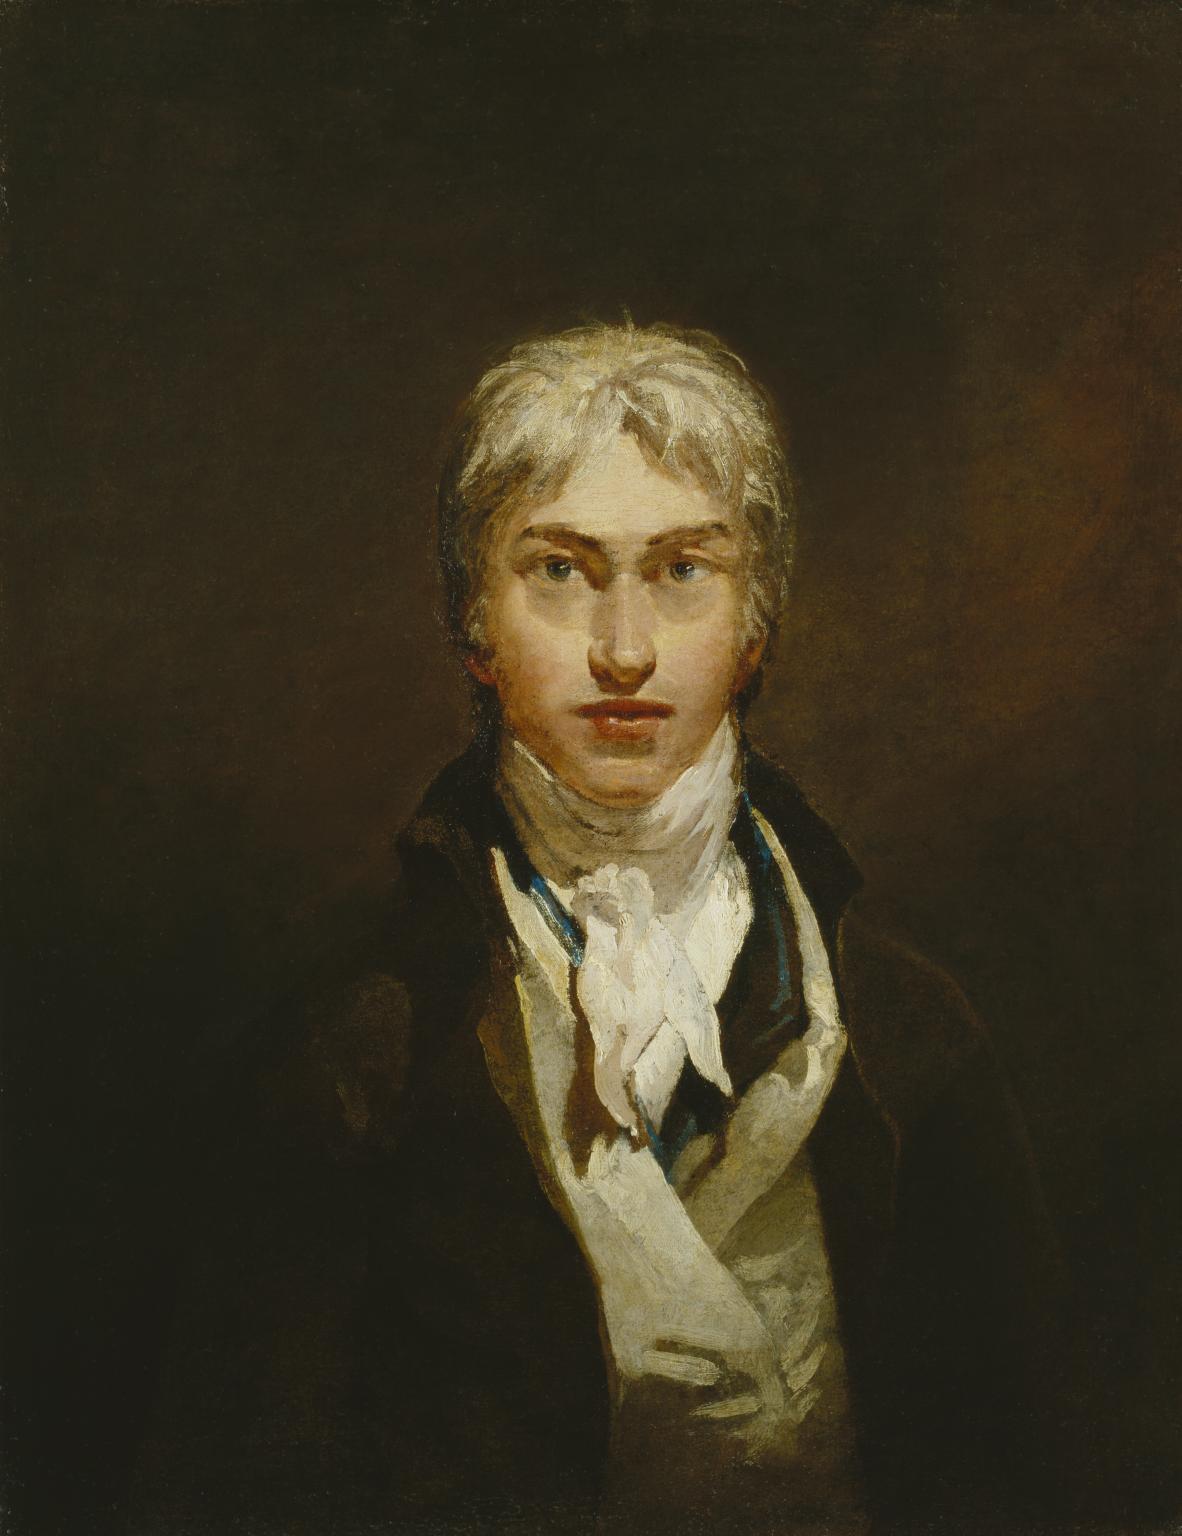 Joseph Mallord William Turner - 1775 - Diciembre 19, 1851